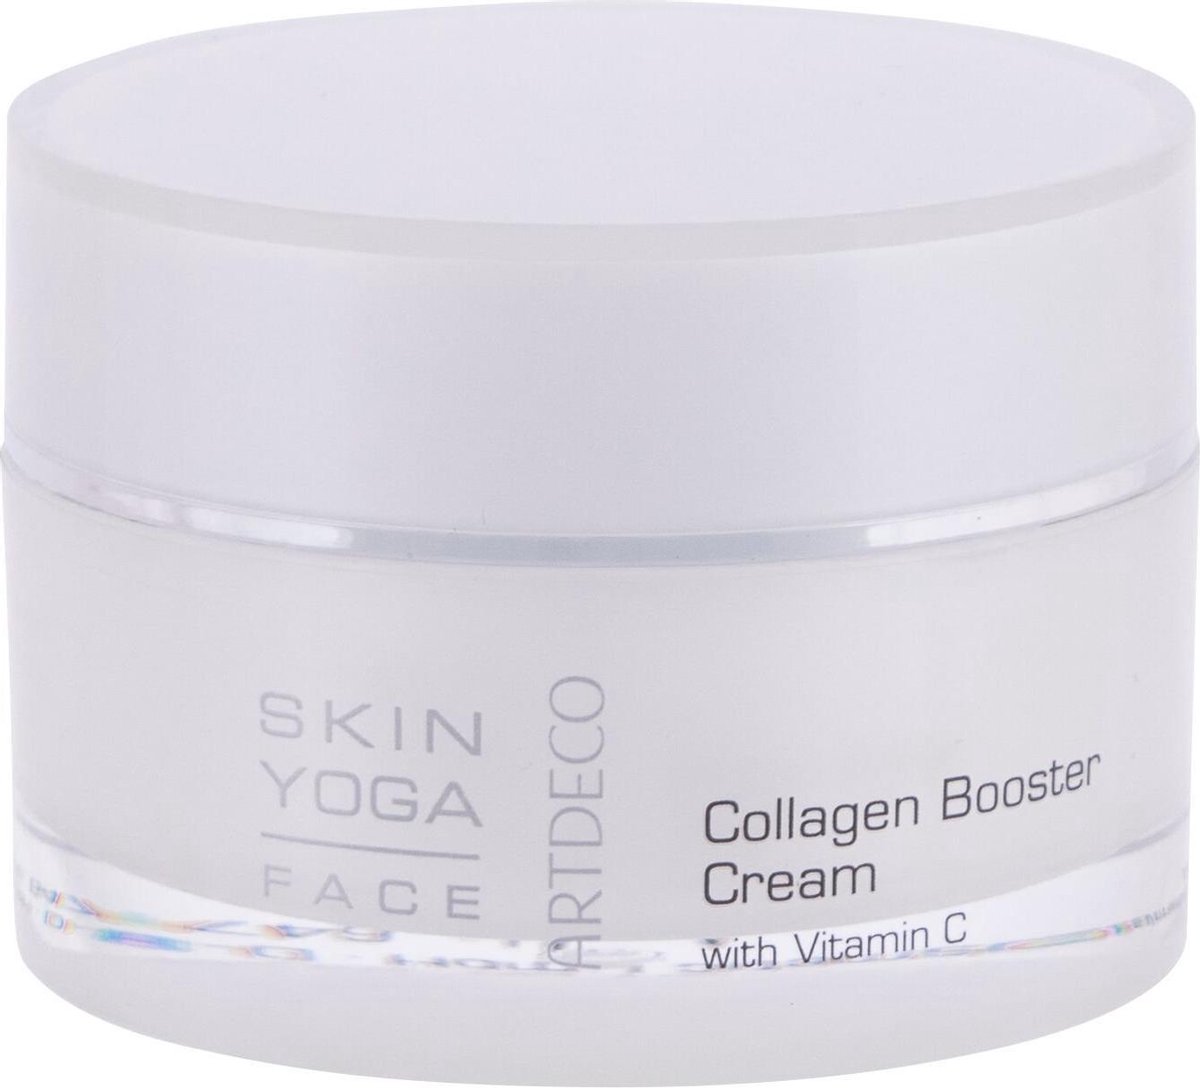 Artdeco - Skin Yoga Collagen Booster Cream with Vitamin C (L)